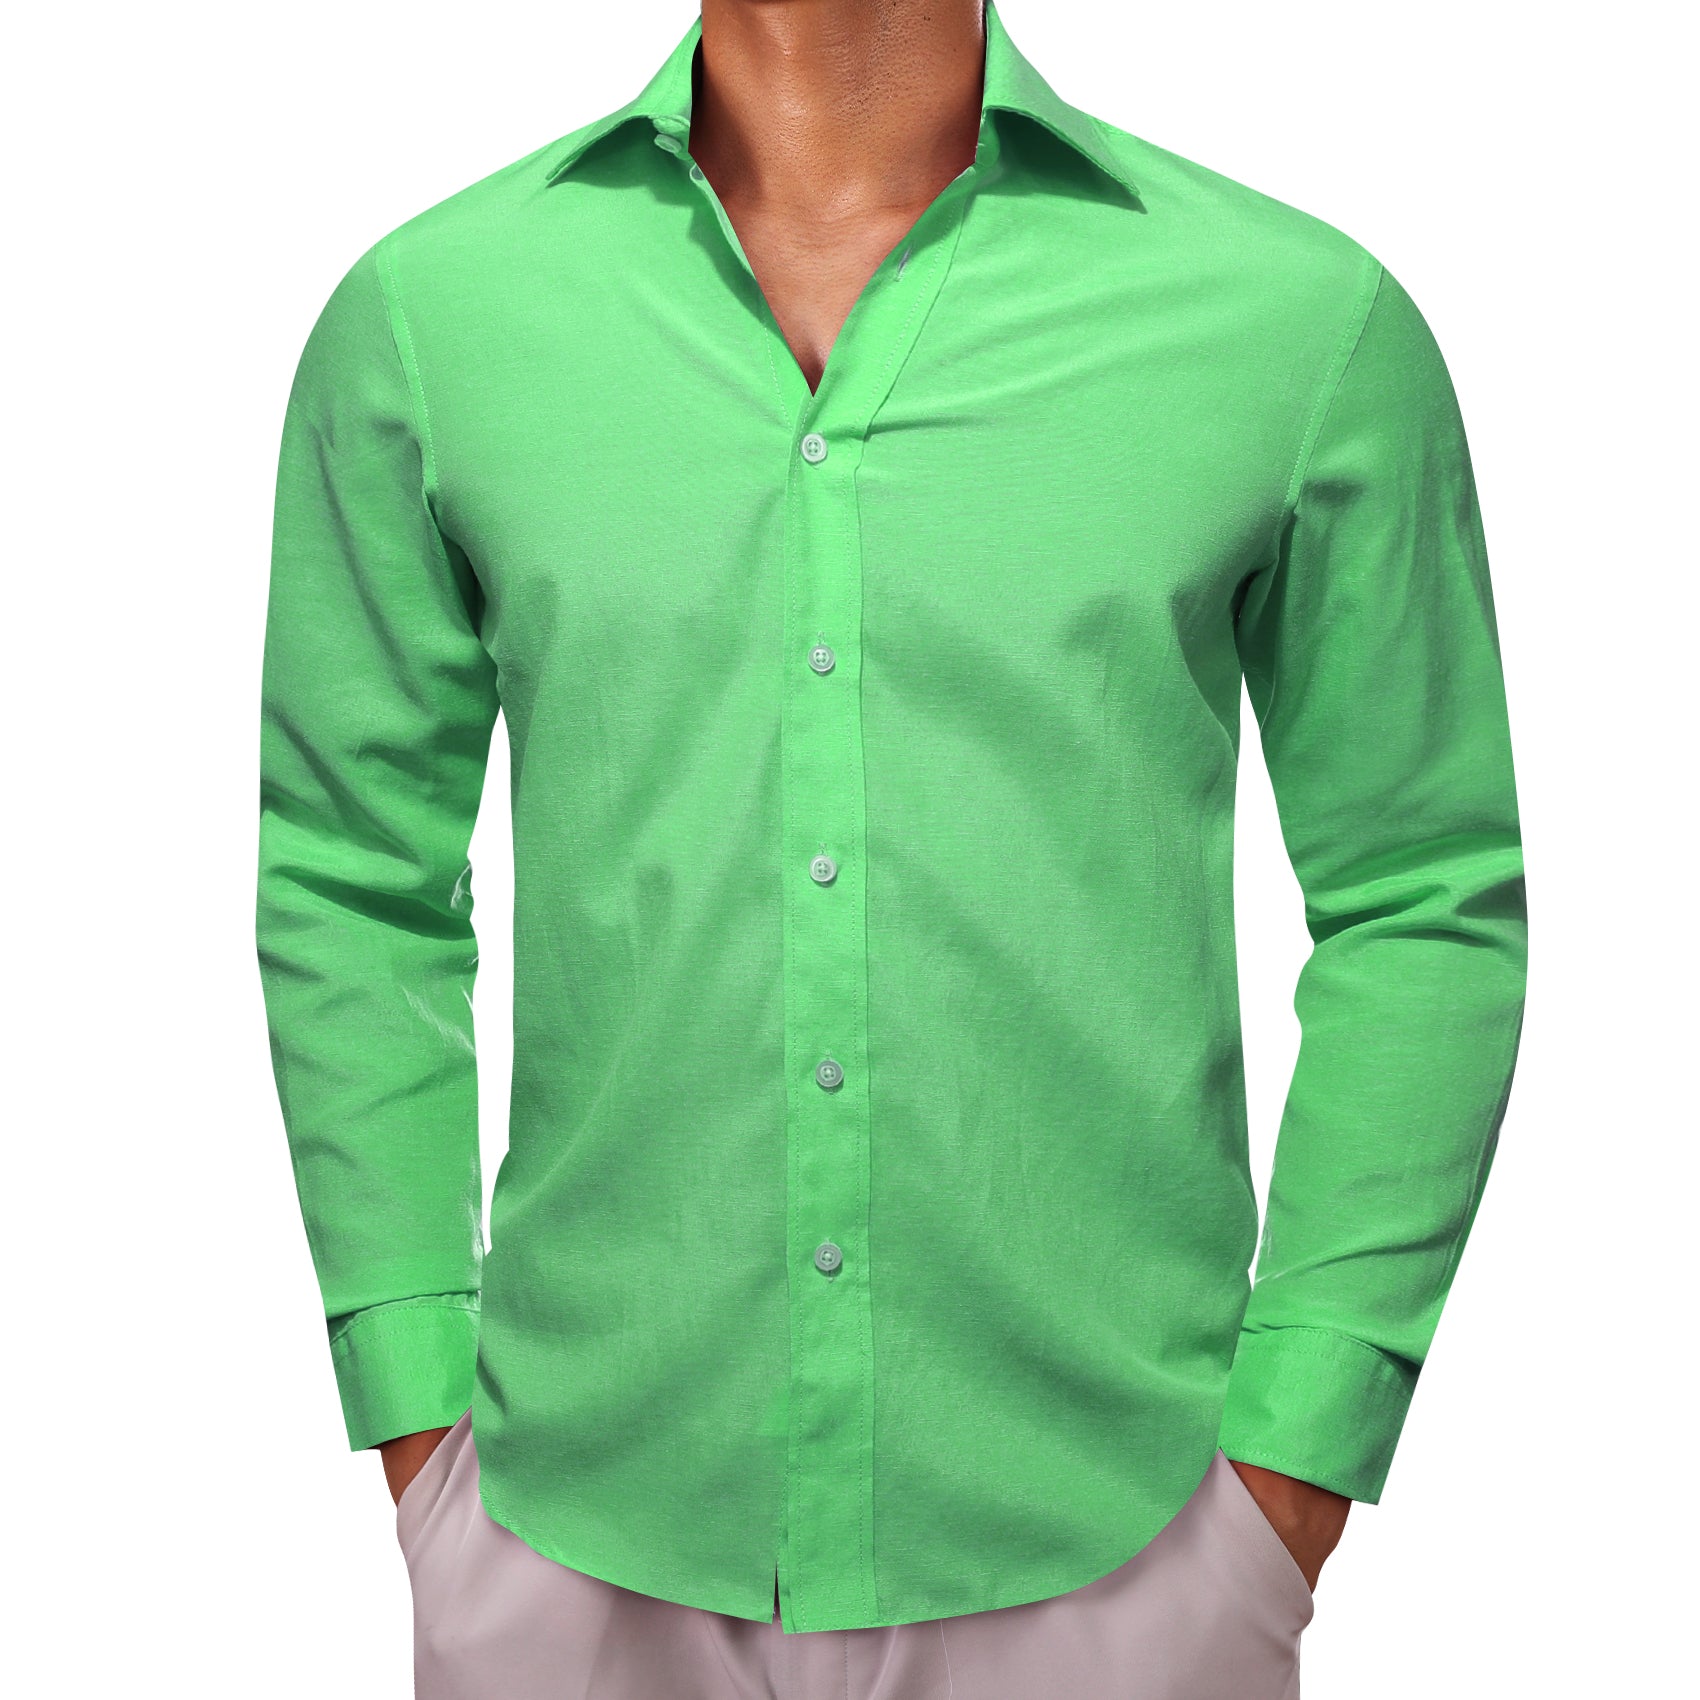 Barry.wang Cobalt Green Solid Men's Shirt